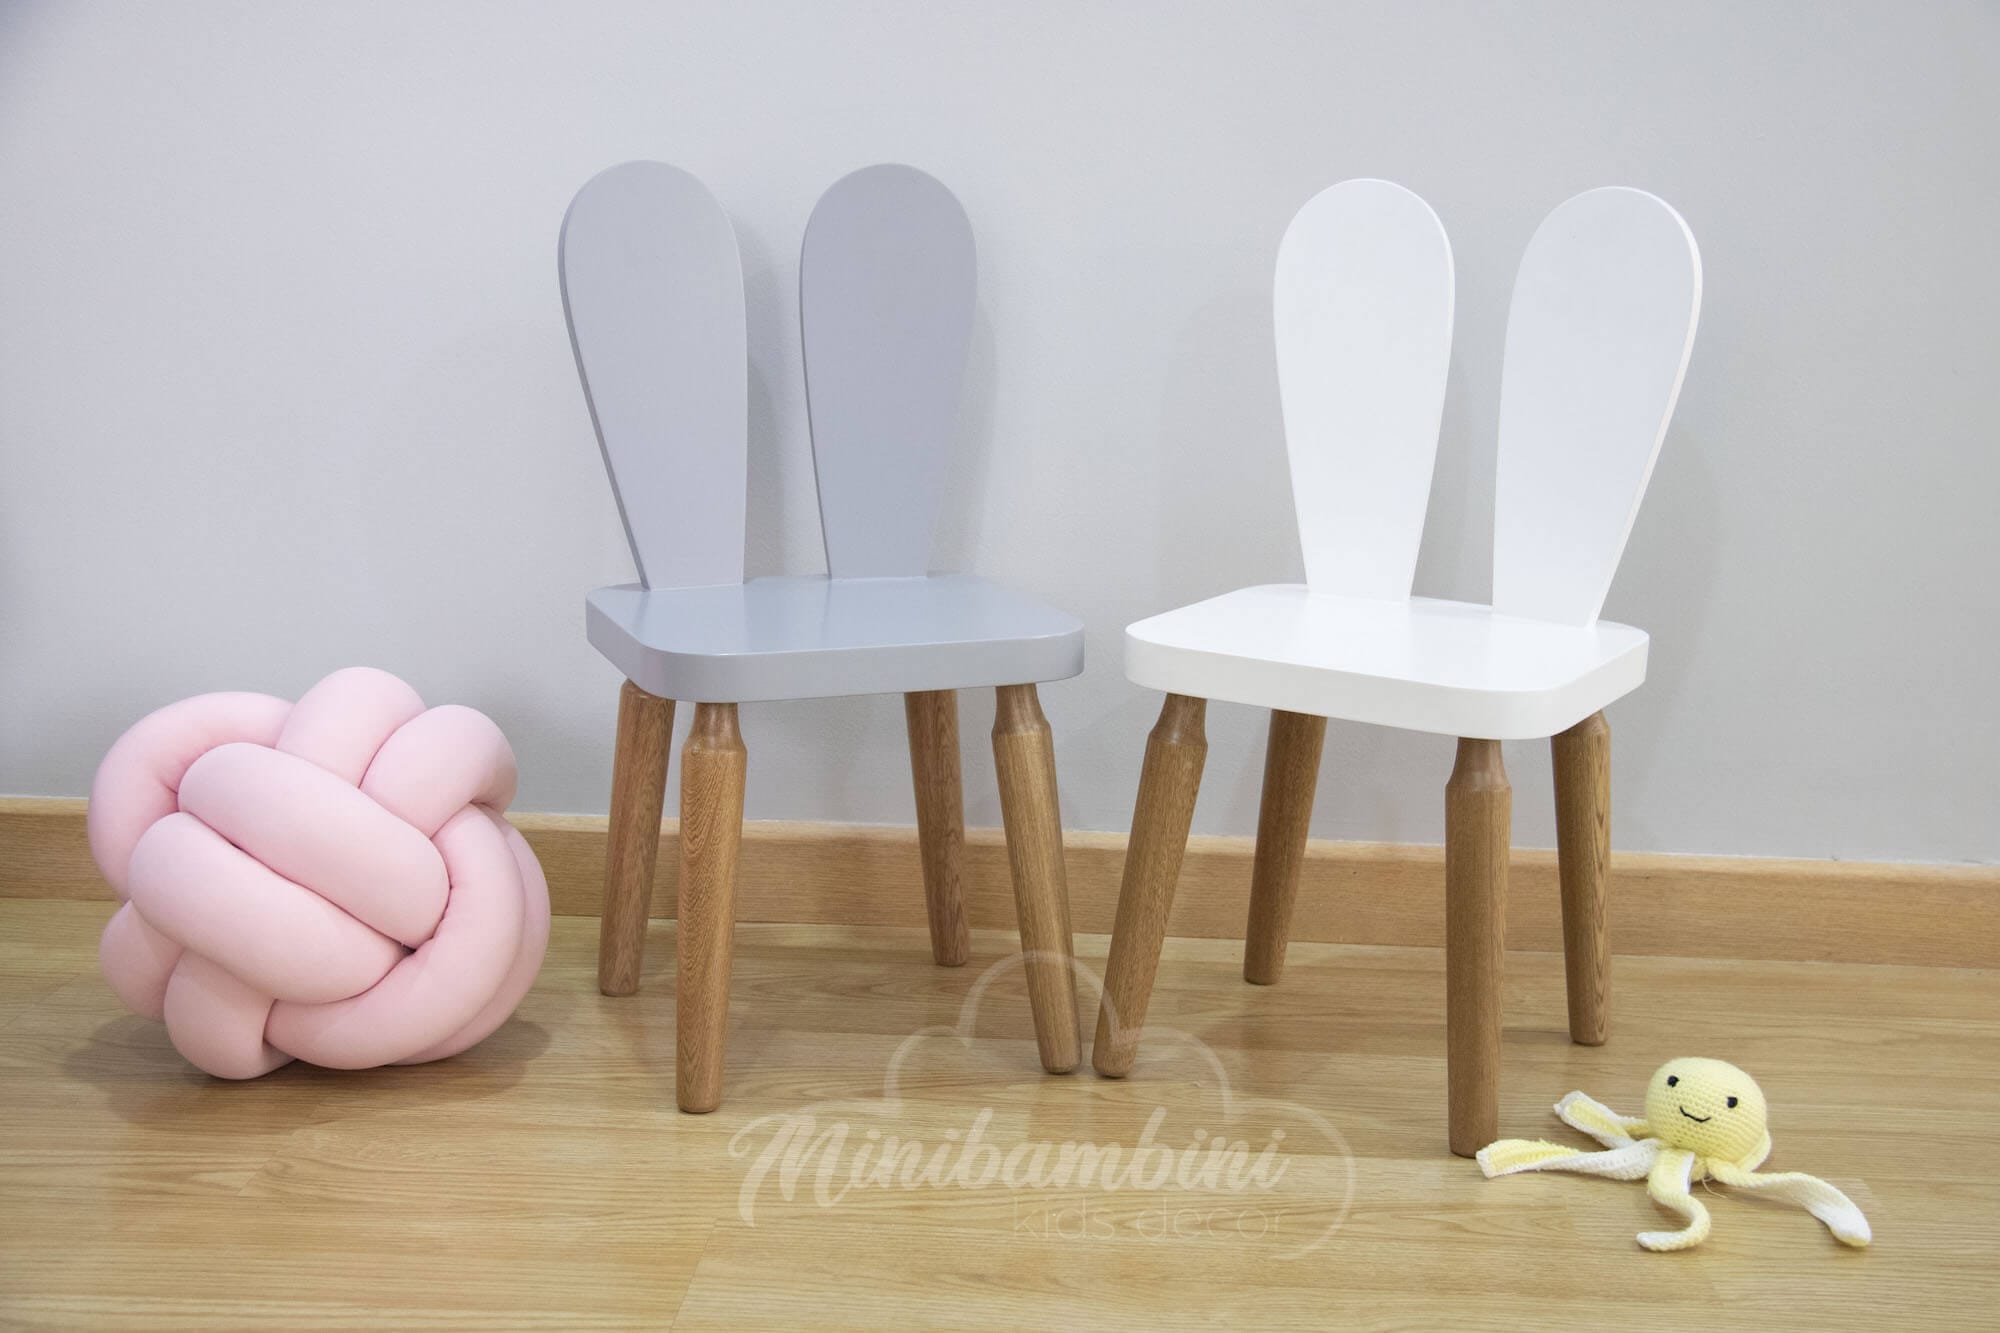 Originales sillas infantiles con forma de animal